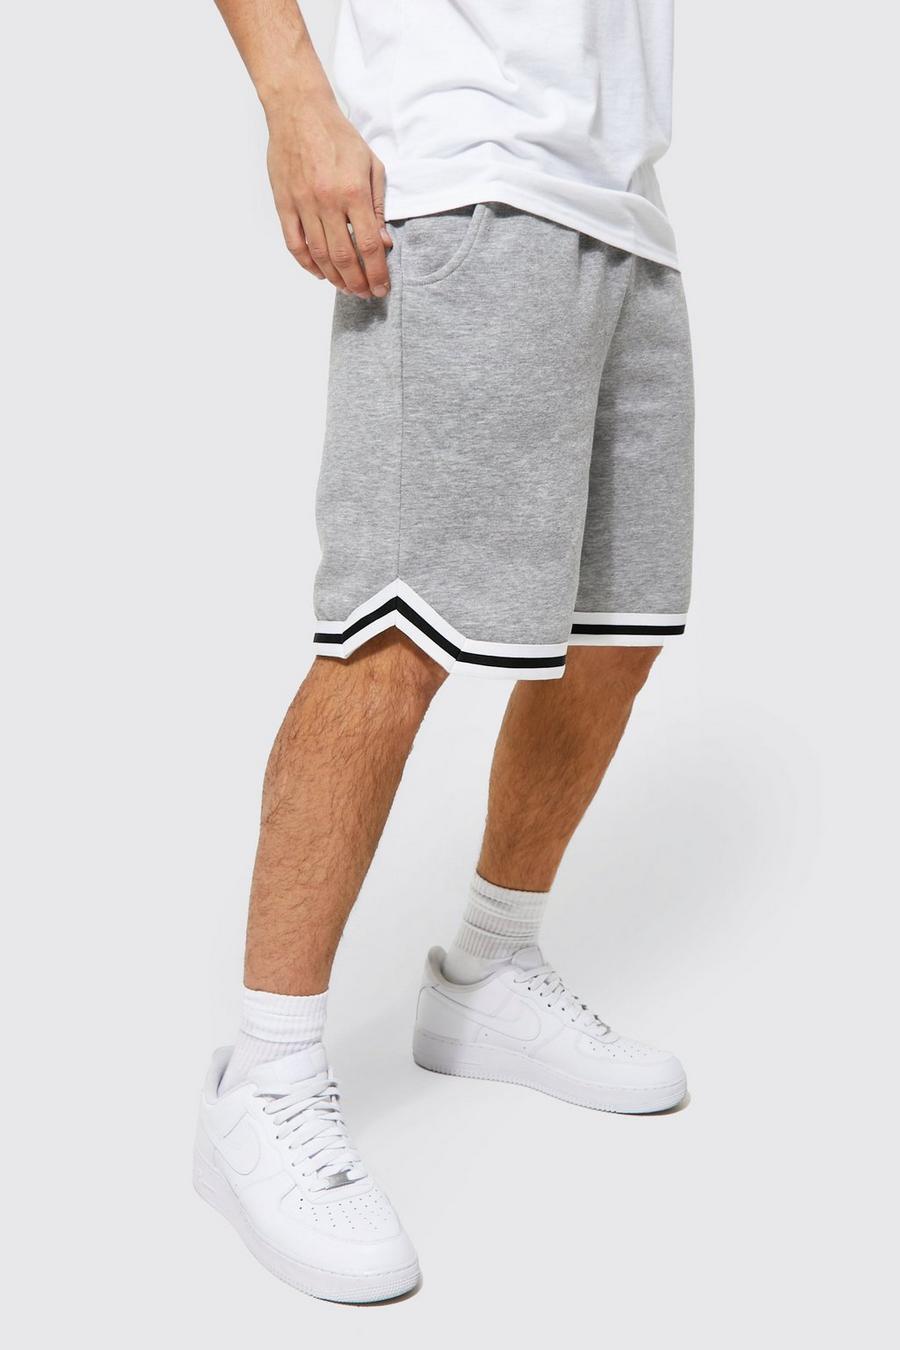 Pantalón corto estilo baloncesto con cinta y algodón ecológico, Grey grigio